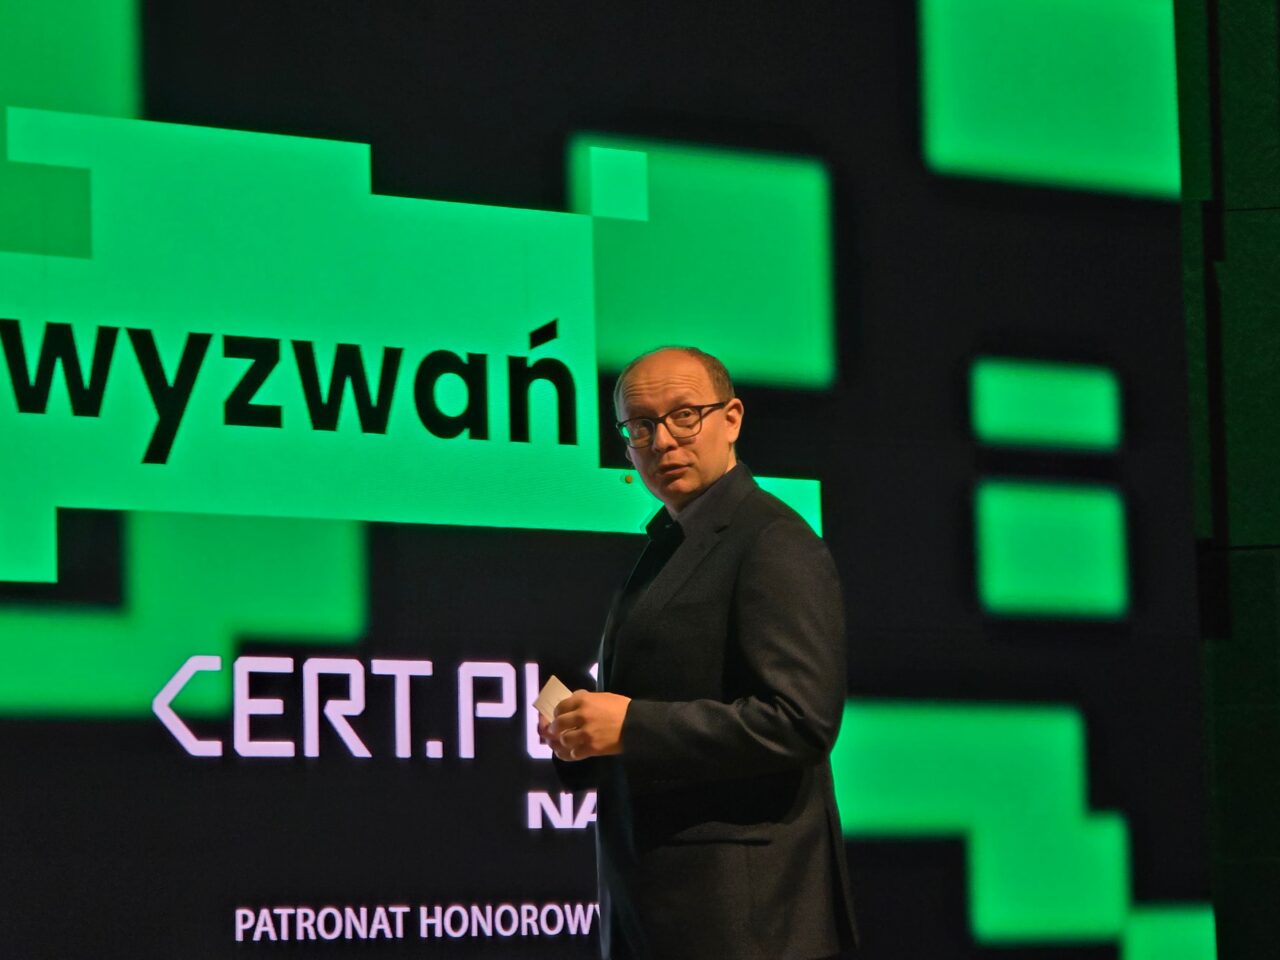 Mężczyzna w ciemnym garniturze stojący na scenie z mikrofonem w ręku na tle dużego ekranu wyświetlającego grafikę z tekstem "wyzwań" i logo CERT.PL.